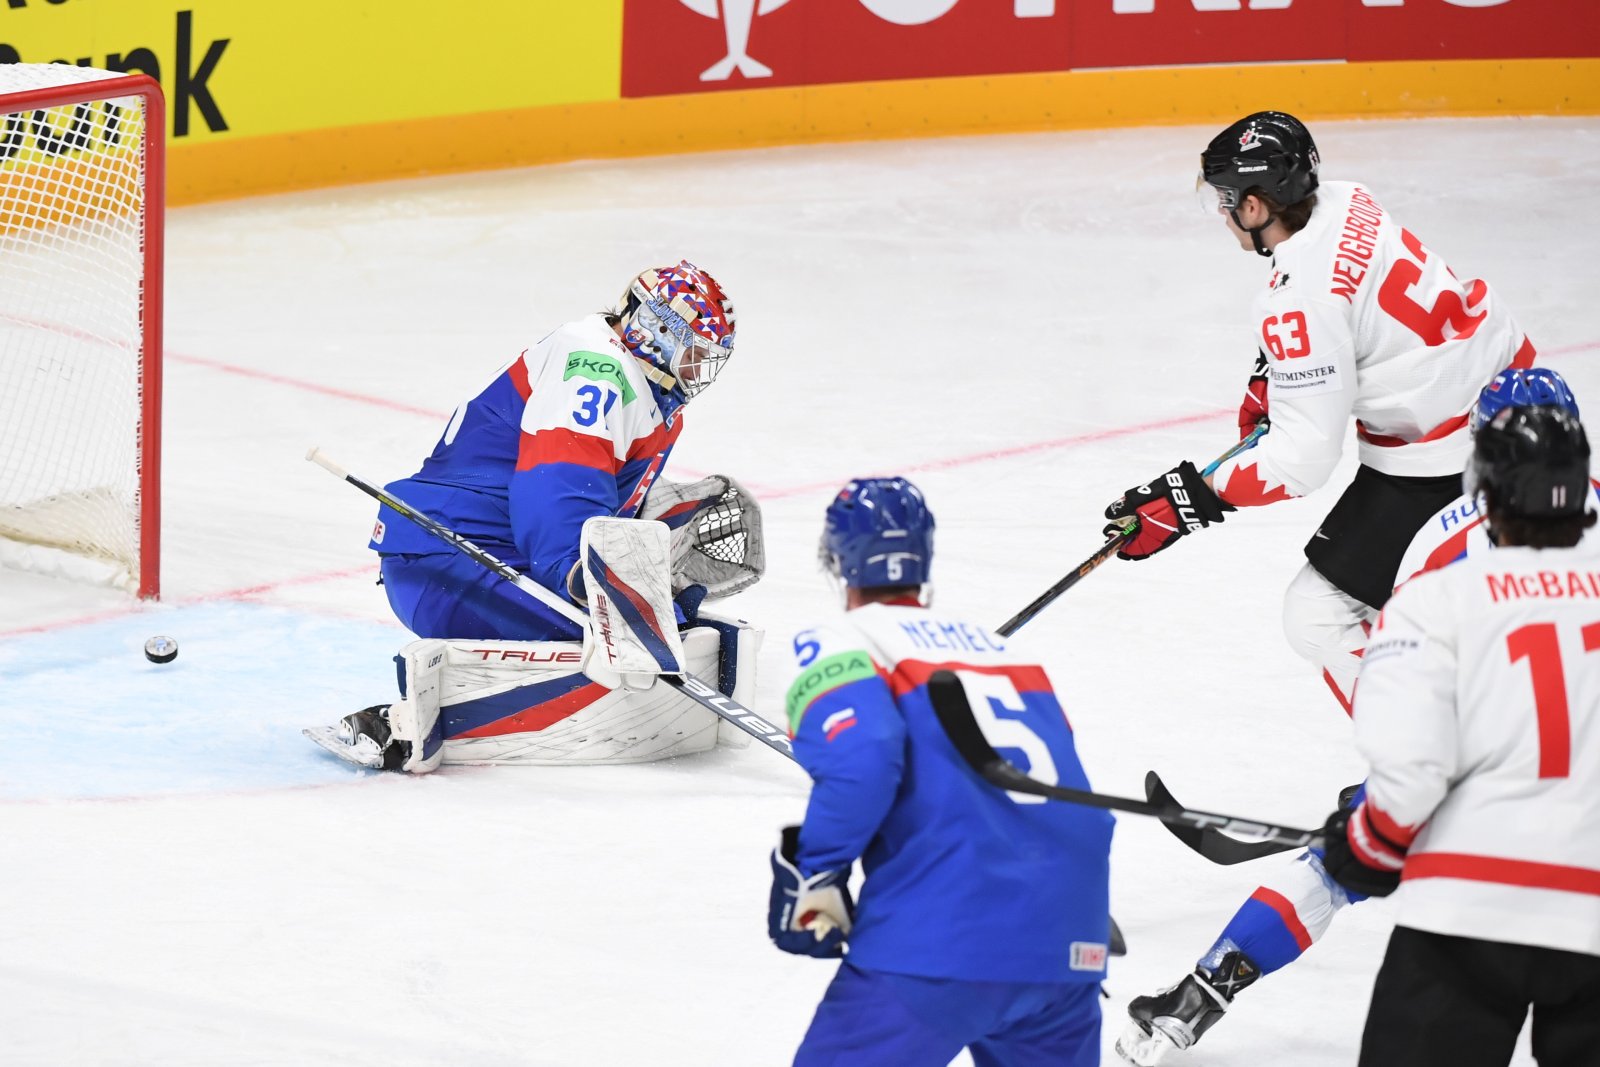 MS v hokeji 2023: Slovensko prehralo s Kanadou 1:2 po nájazdoch